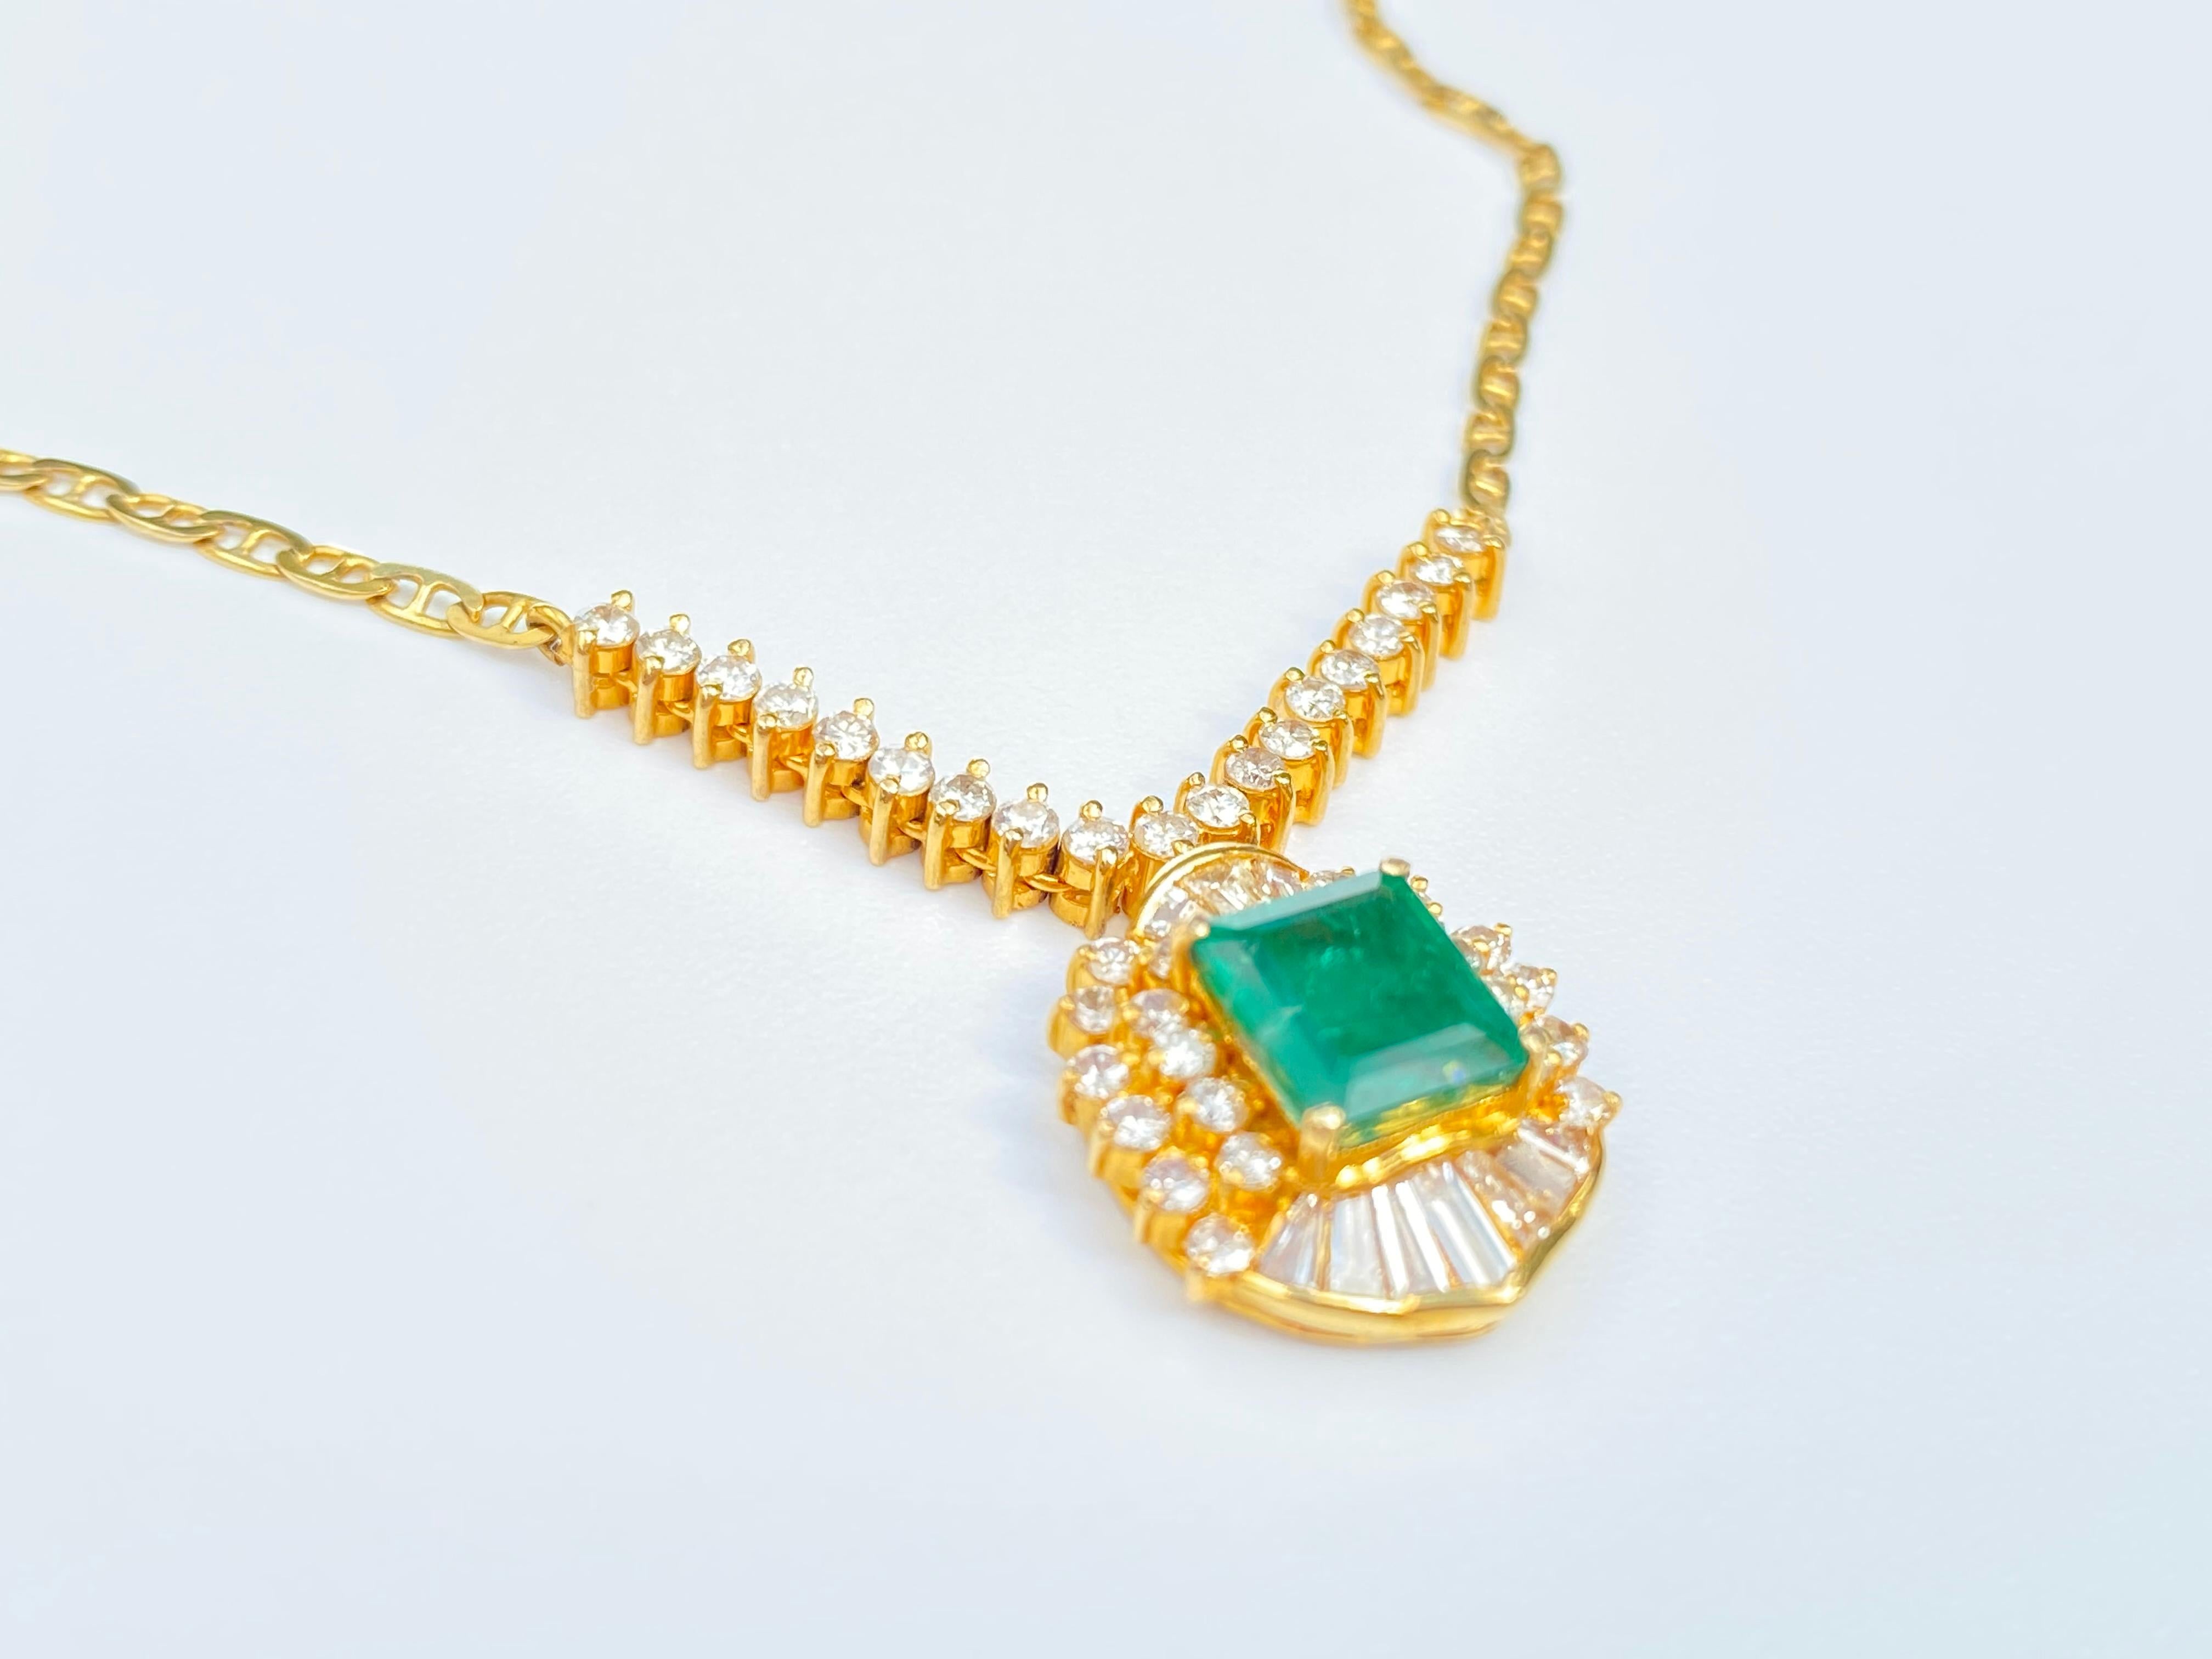 Emerald Cut 1.33 Carat Emerald-Cut Colombian Emerald, Diamond and 18 Karat Gold Pendant For Sale